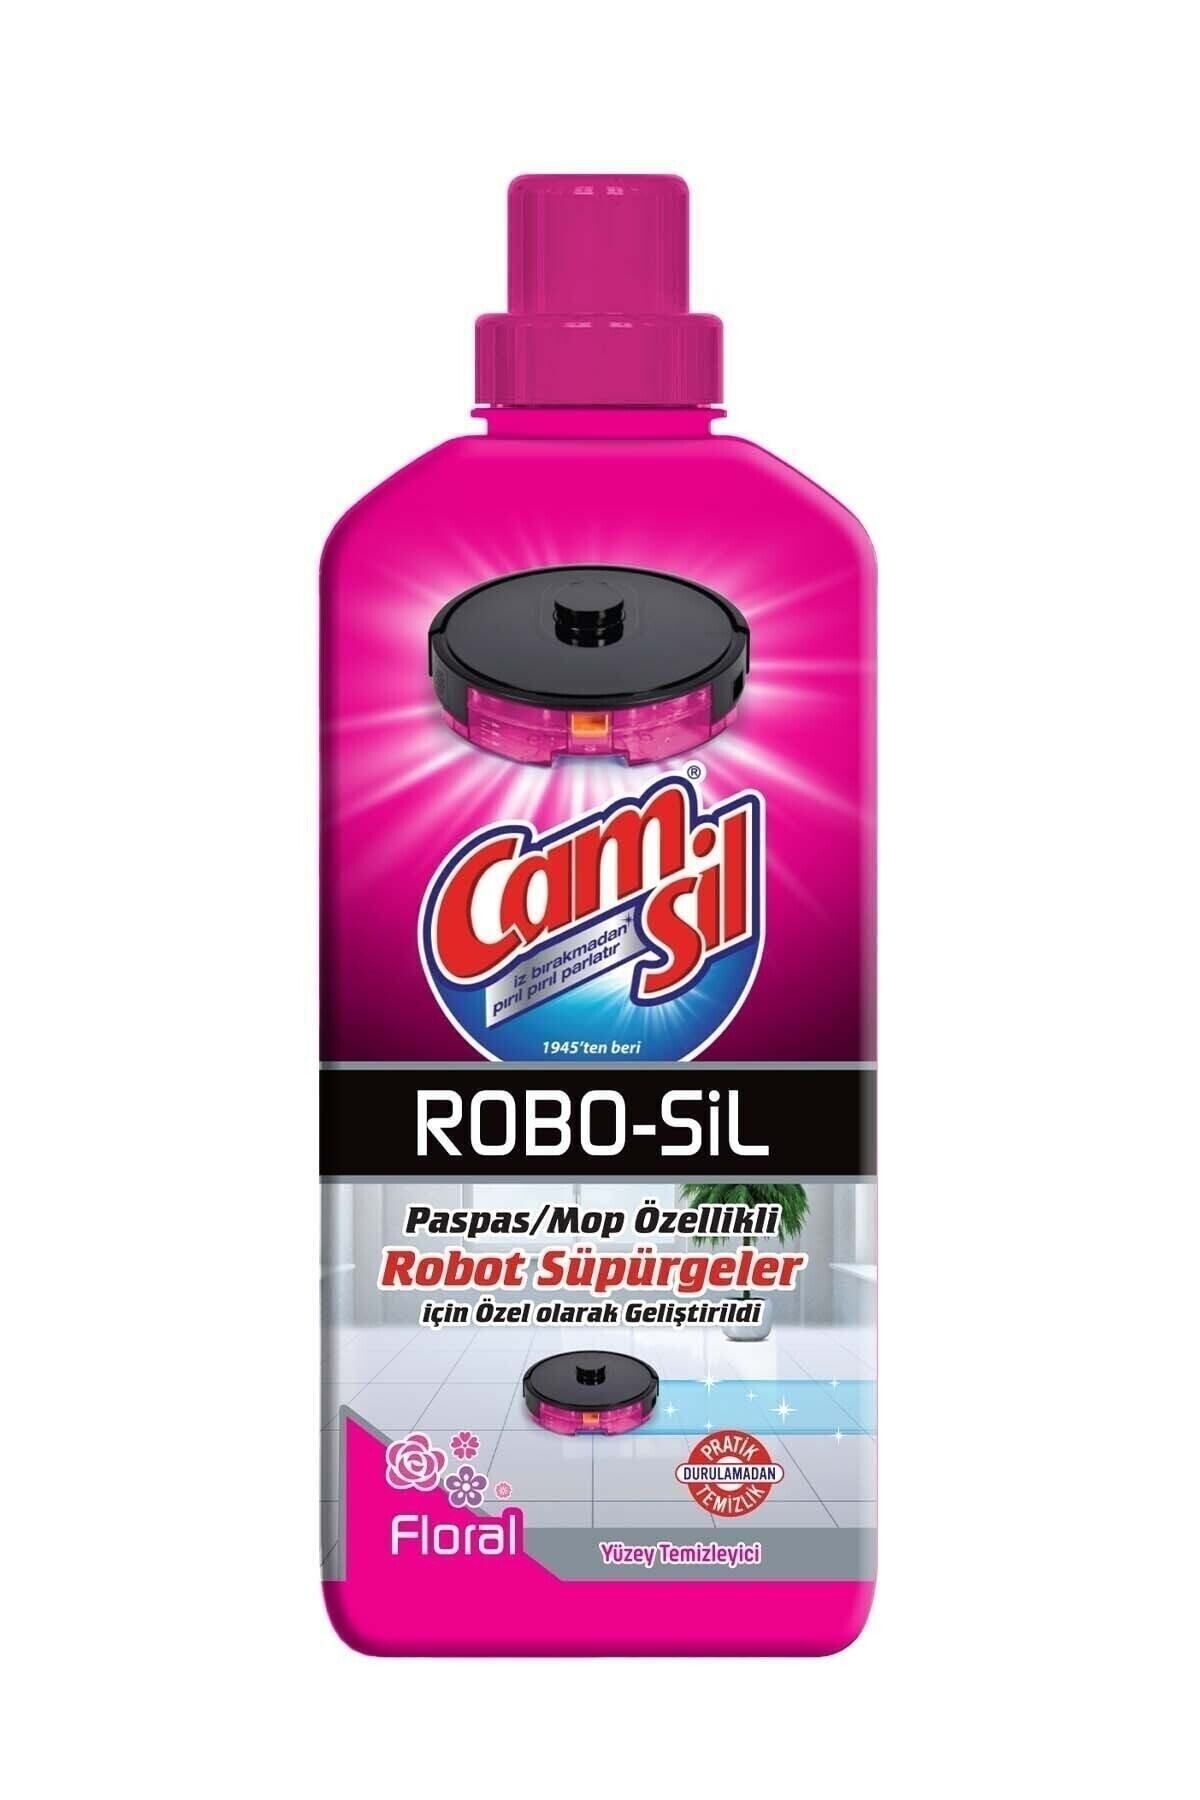 Camsil Robot Süpürge Deterjanı Robo-sil Yüzey Temizleyici Floral 900 ml